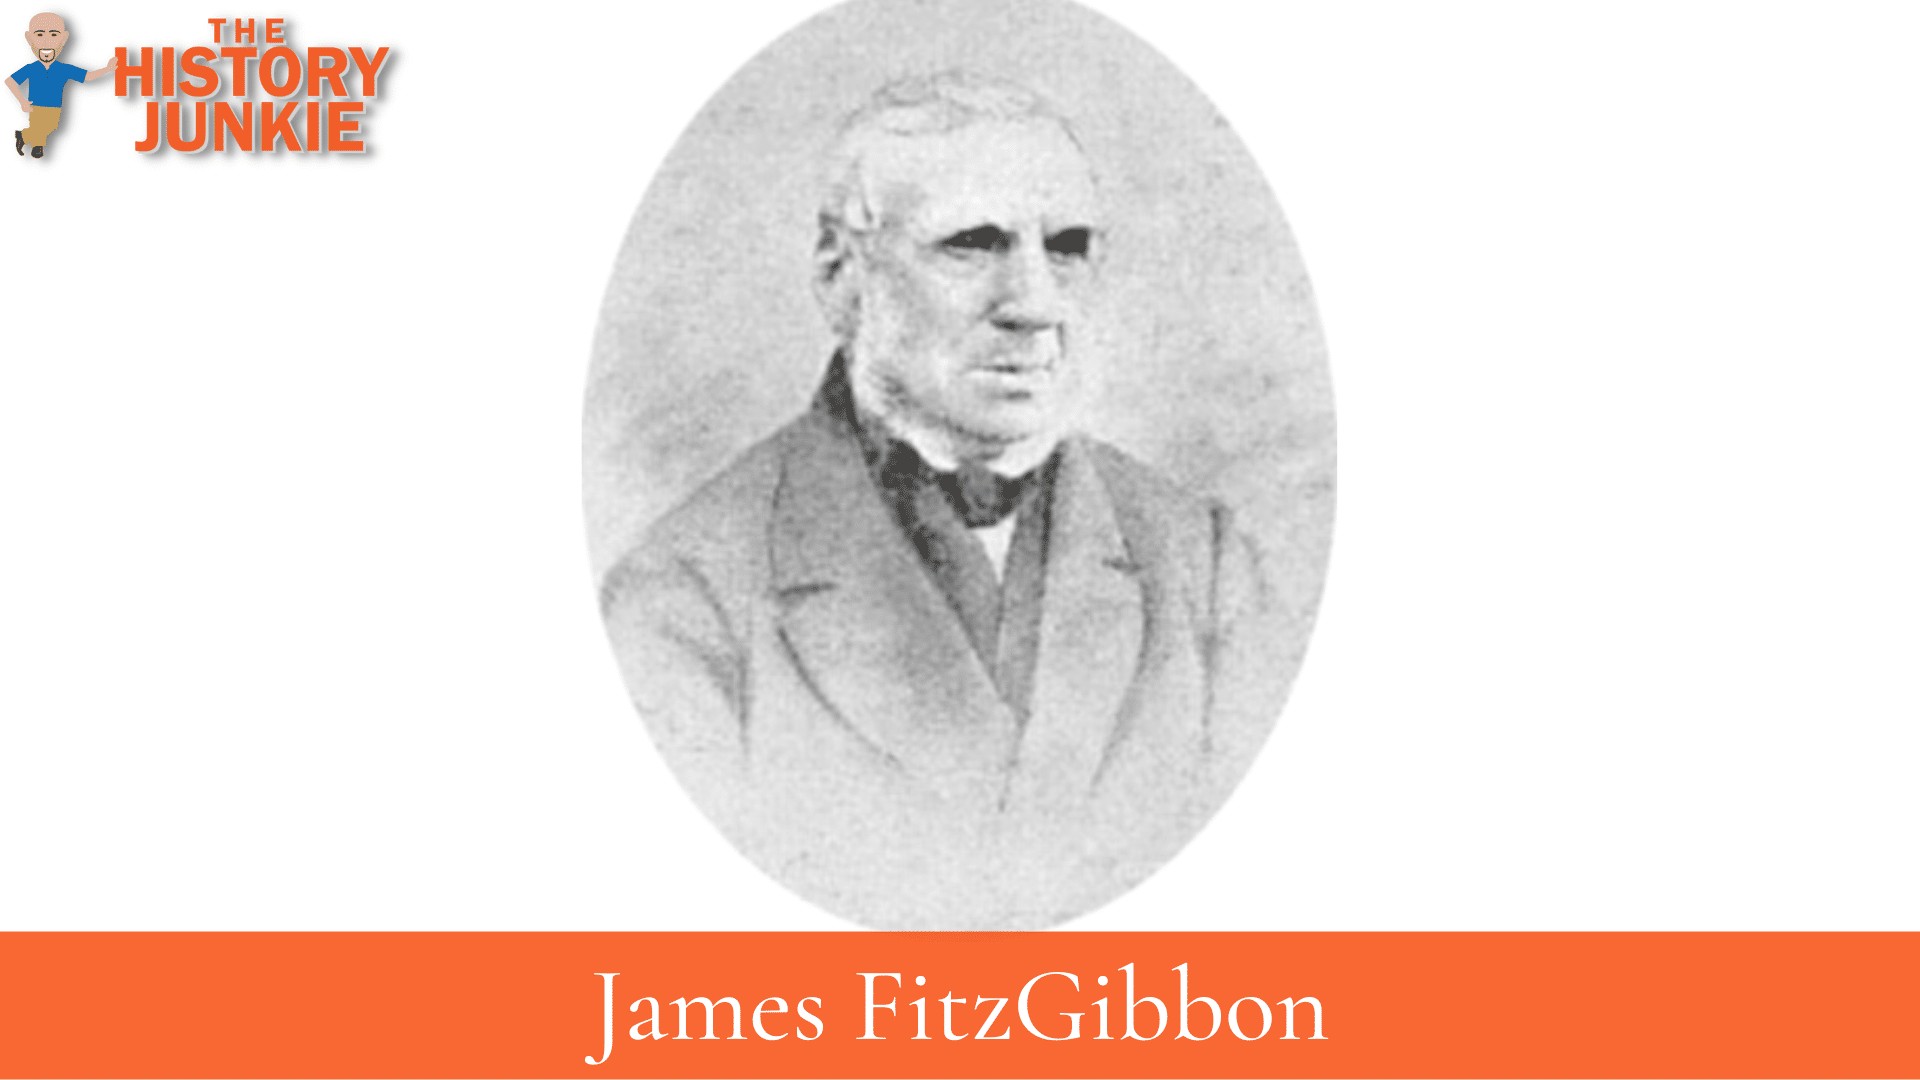 James FitzGibbon